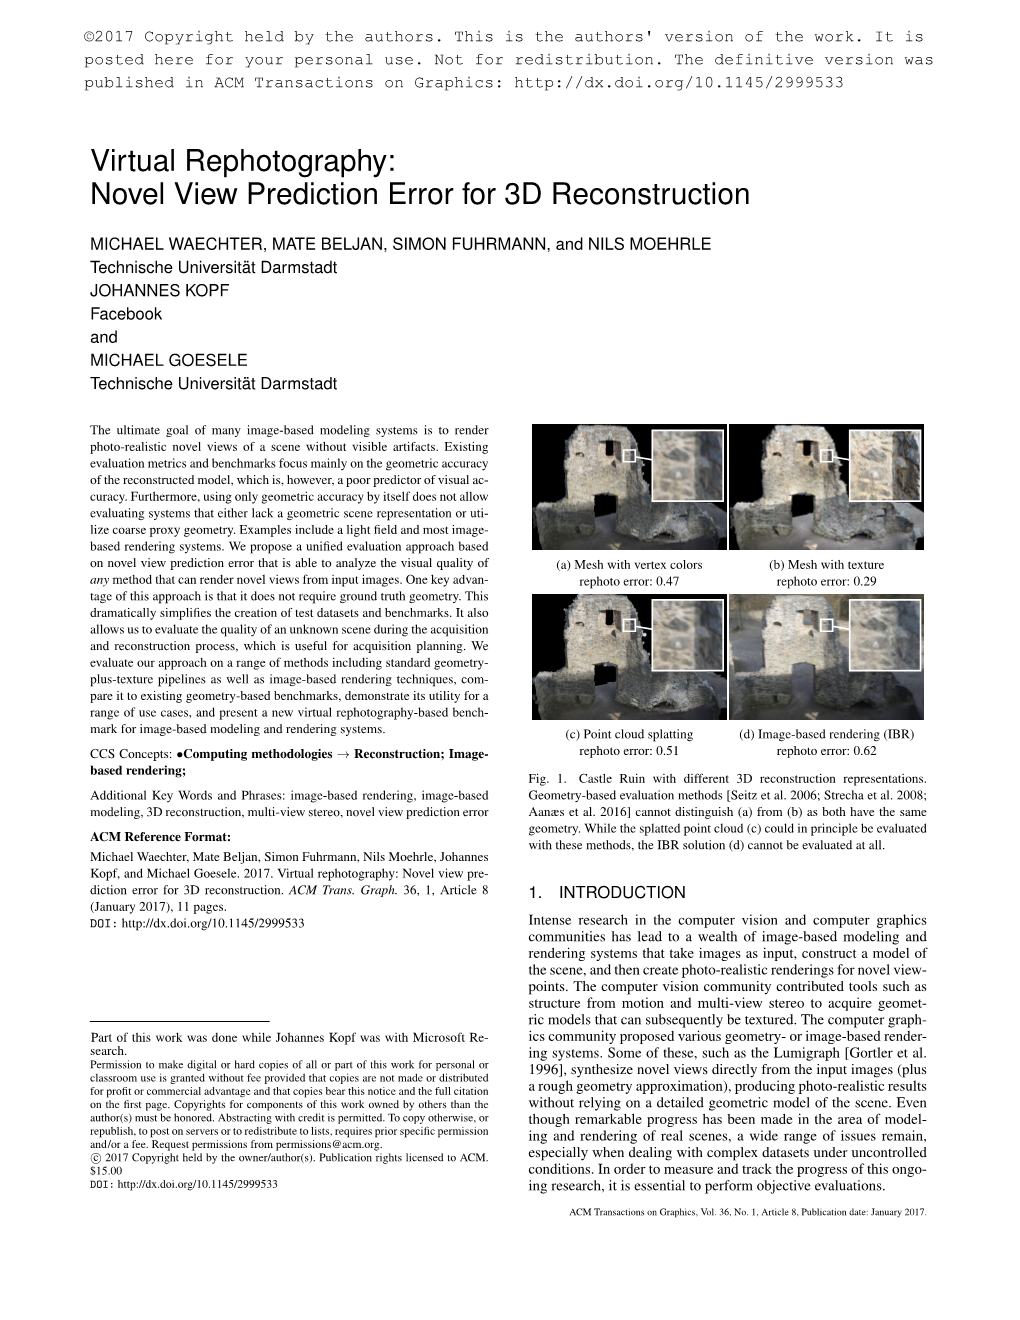 Virtual Rephotography: Novel View Prediction Error for 3D Reconstruction